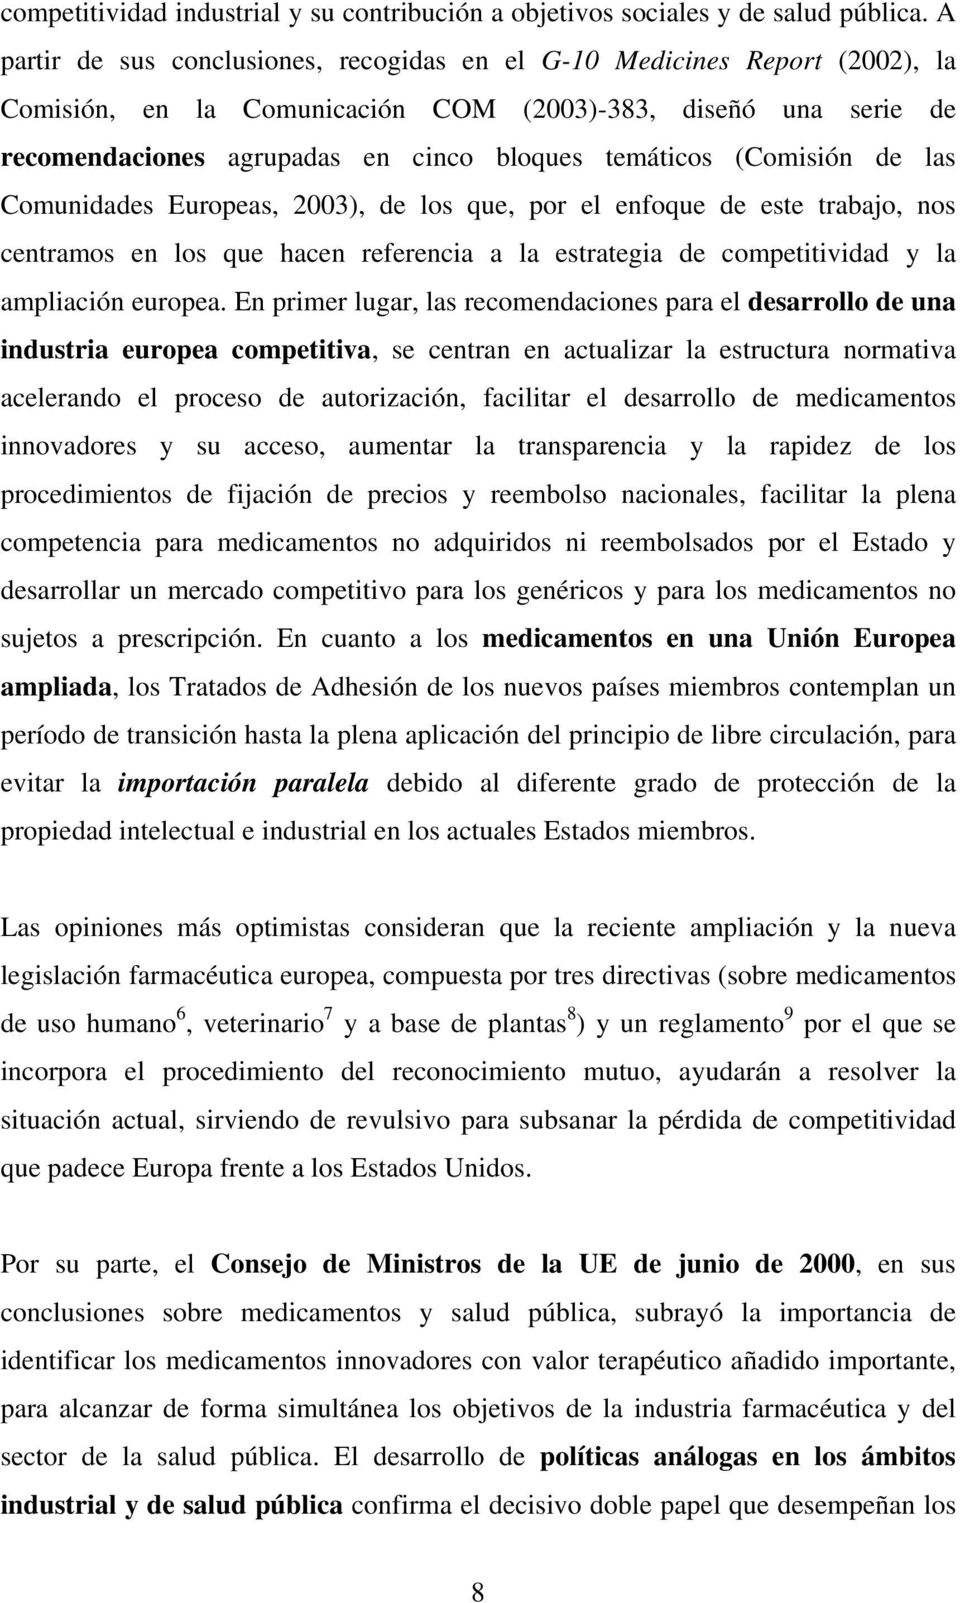 Comundades Europeas, 2003), de los que, por el enfoque de este trabajo, nos centramos en los que hacen referenca a la estratega de compettvdad y la amplacón europea.